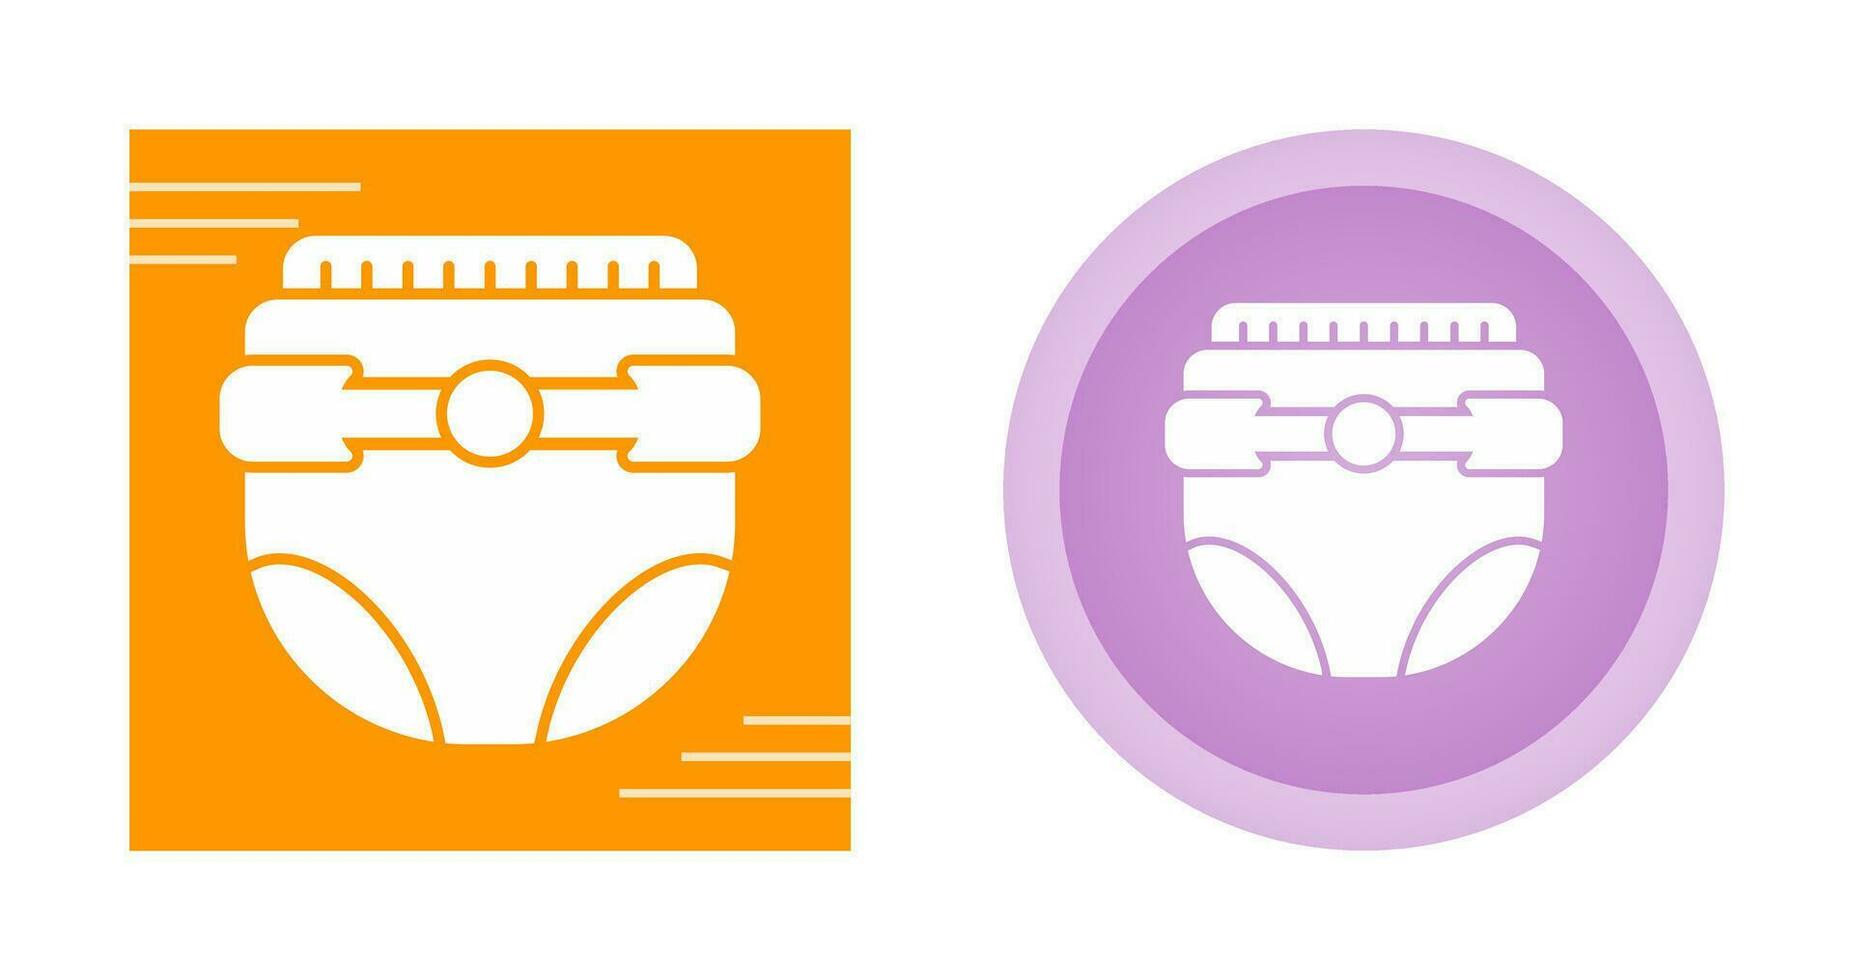 Diaper Vector Icon